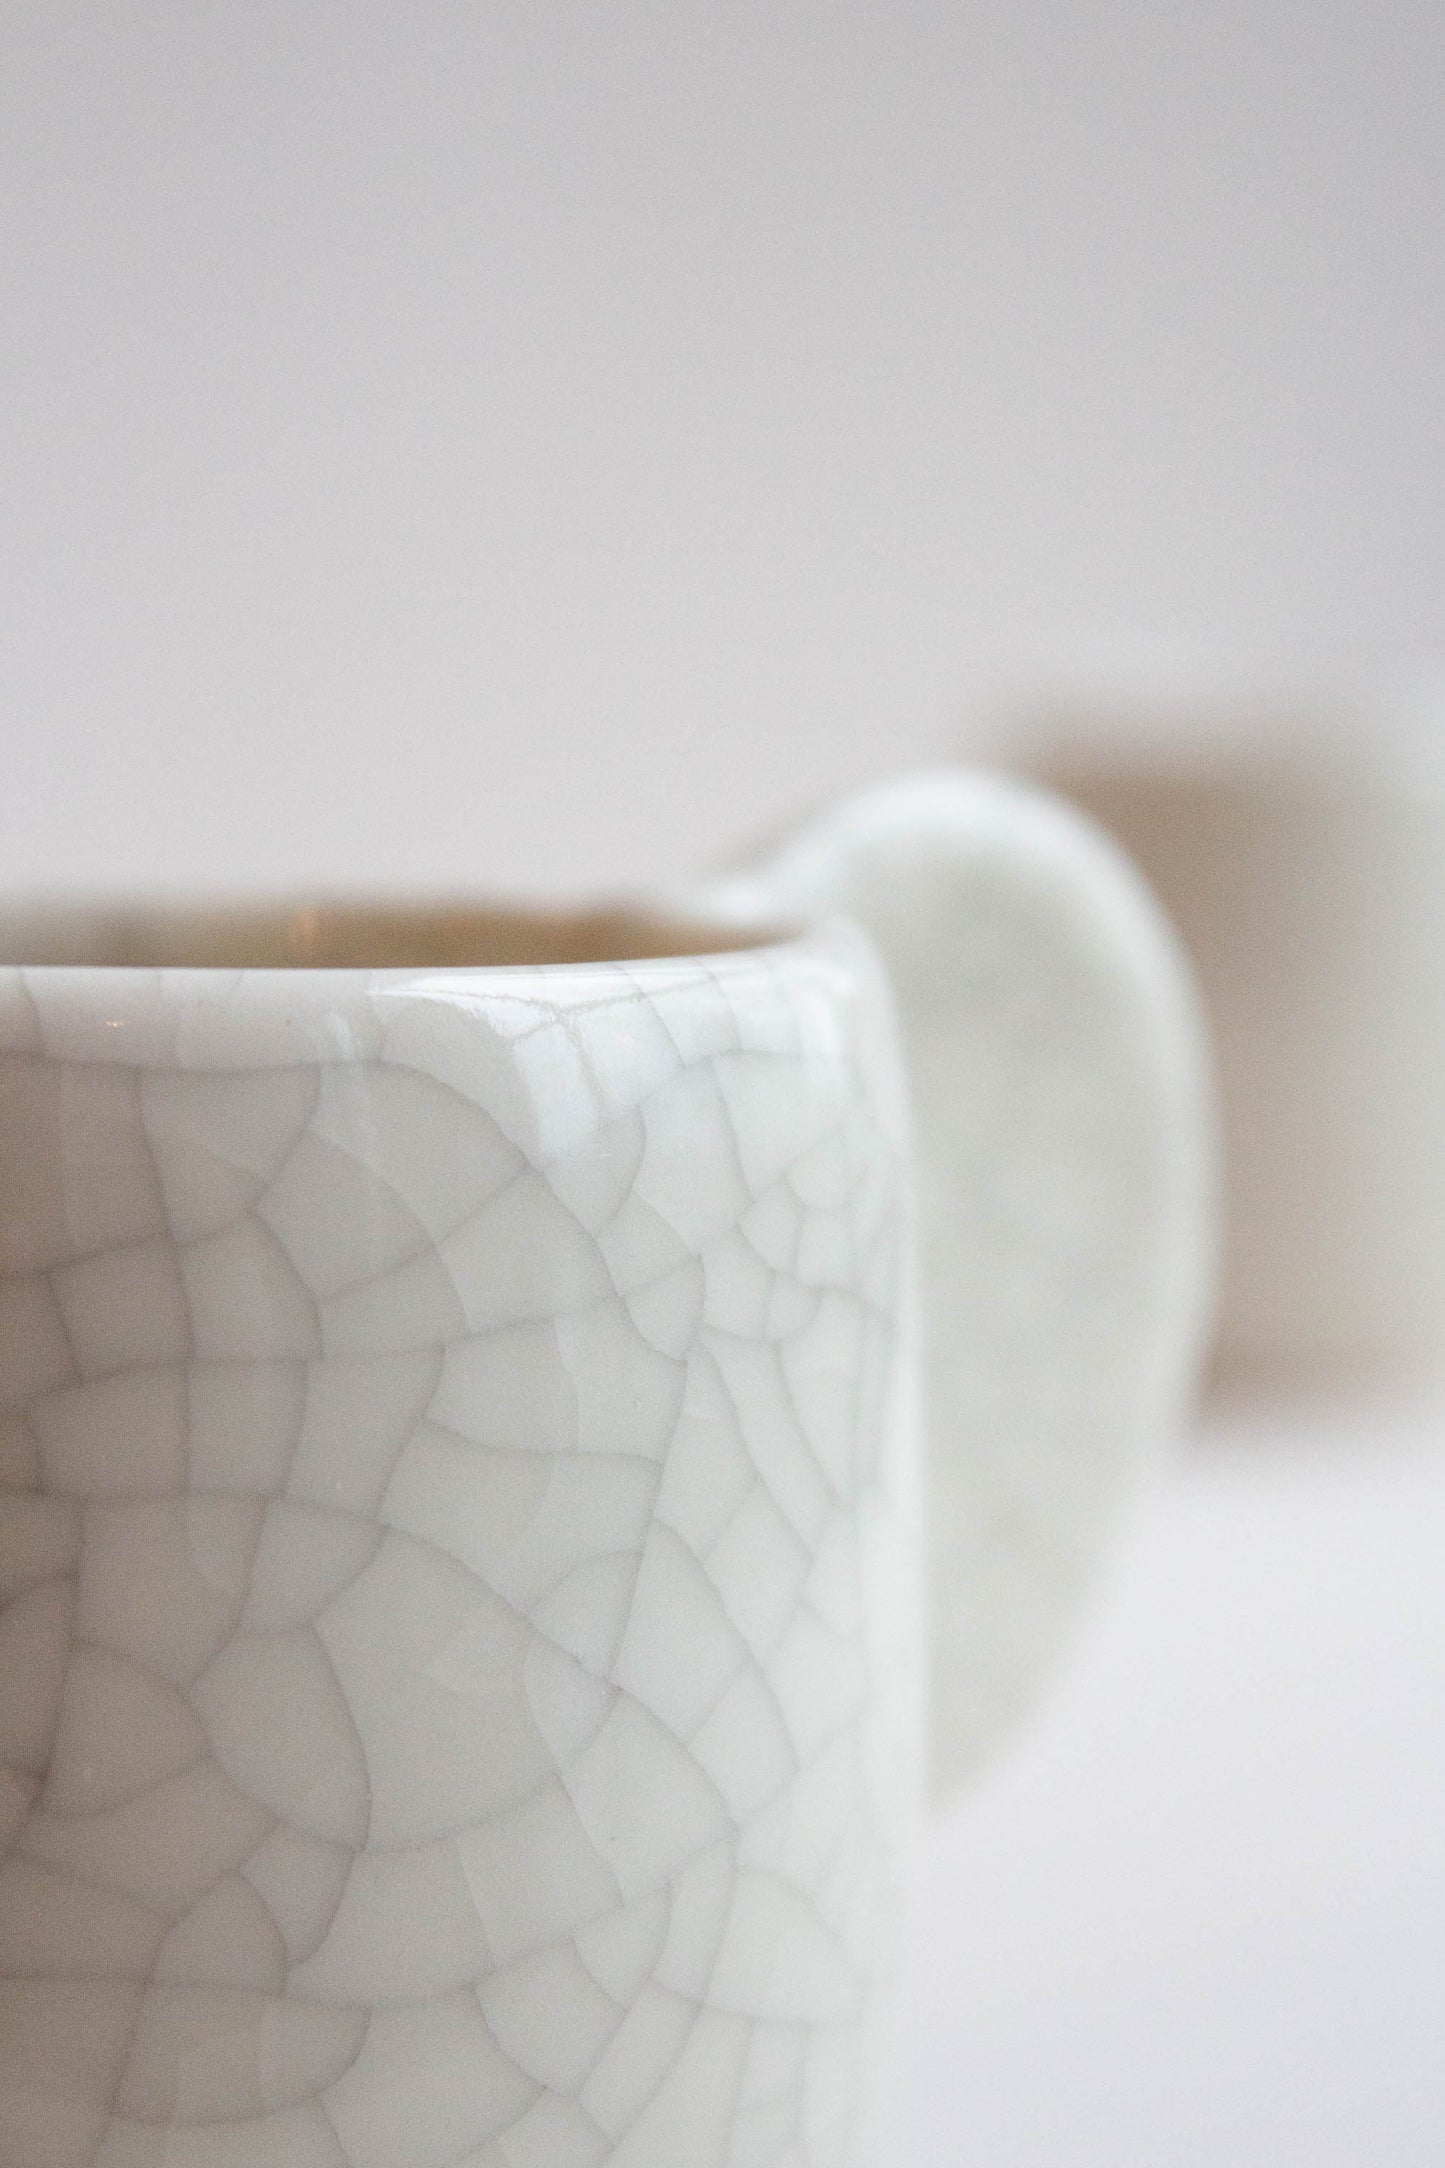 Close-up of the Dashi Coffee Cup Quartz by Jars Ceramistes.